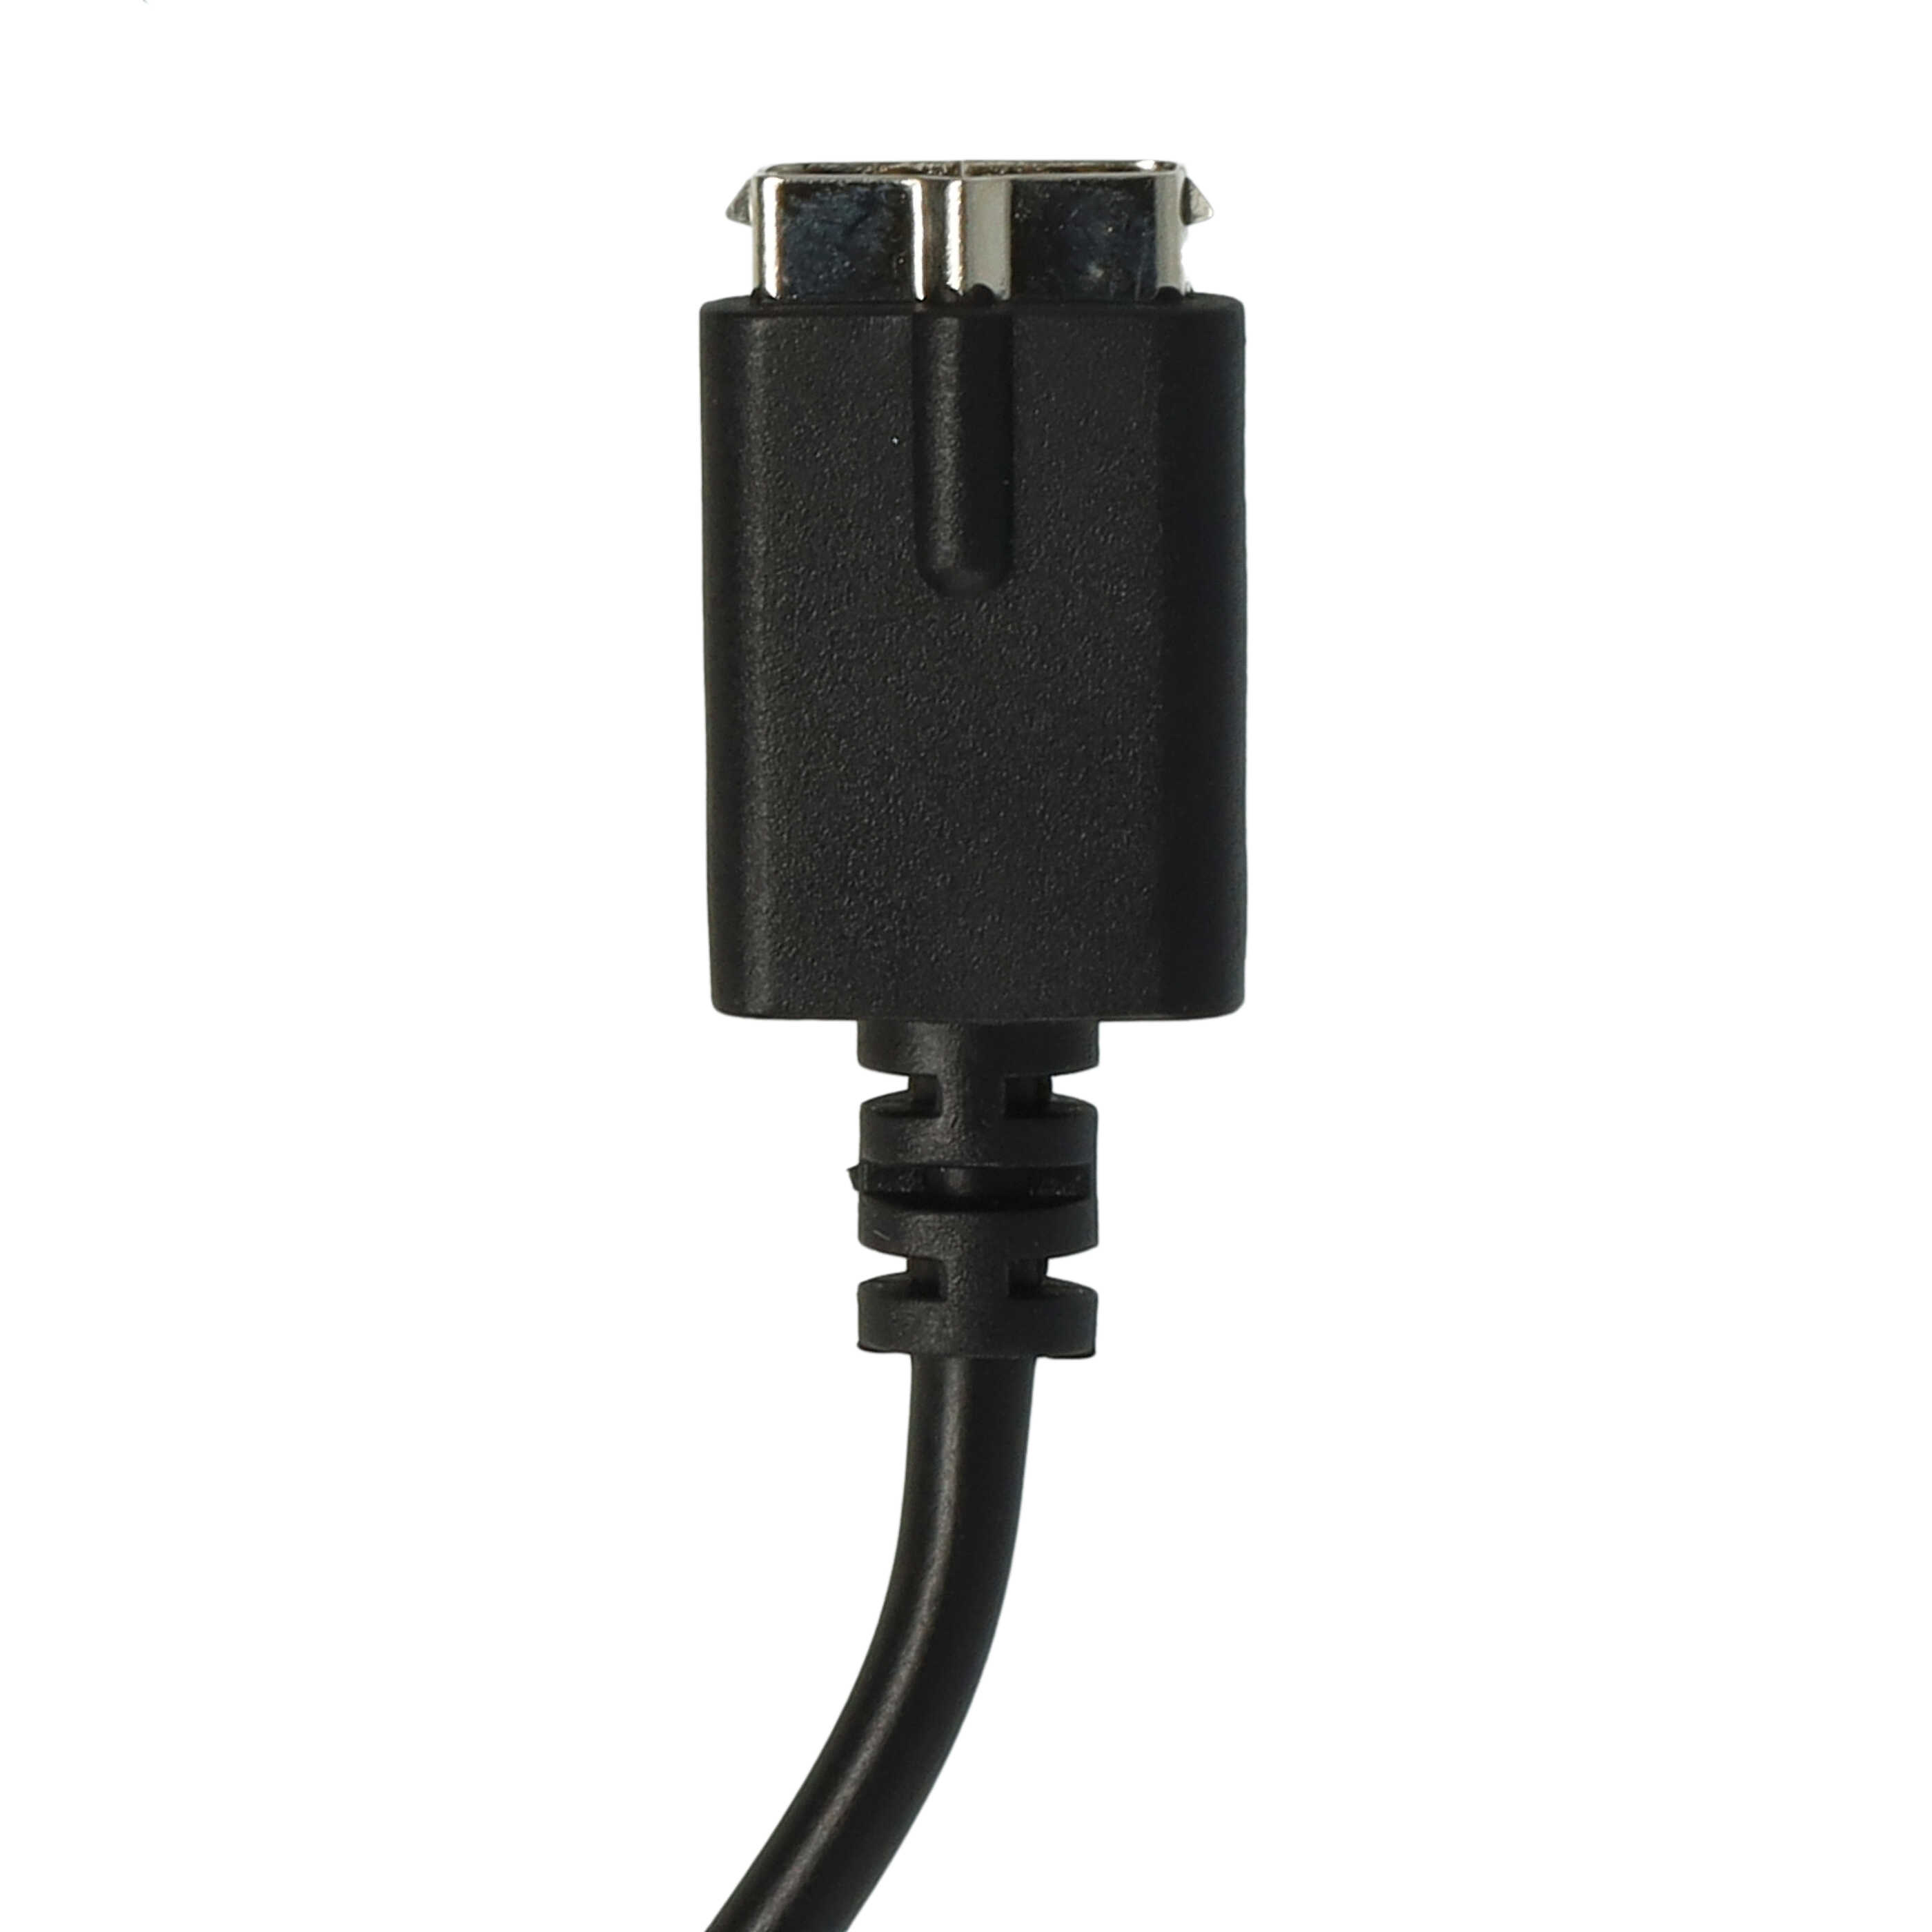 Cable de carga USB para smartwatch Polar M430 - negro 100 cm